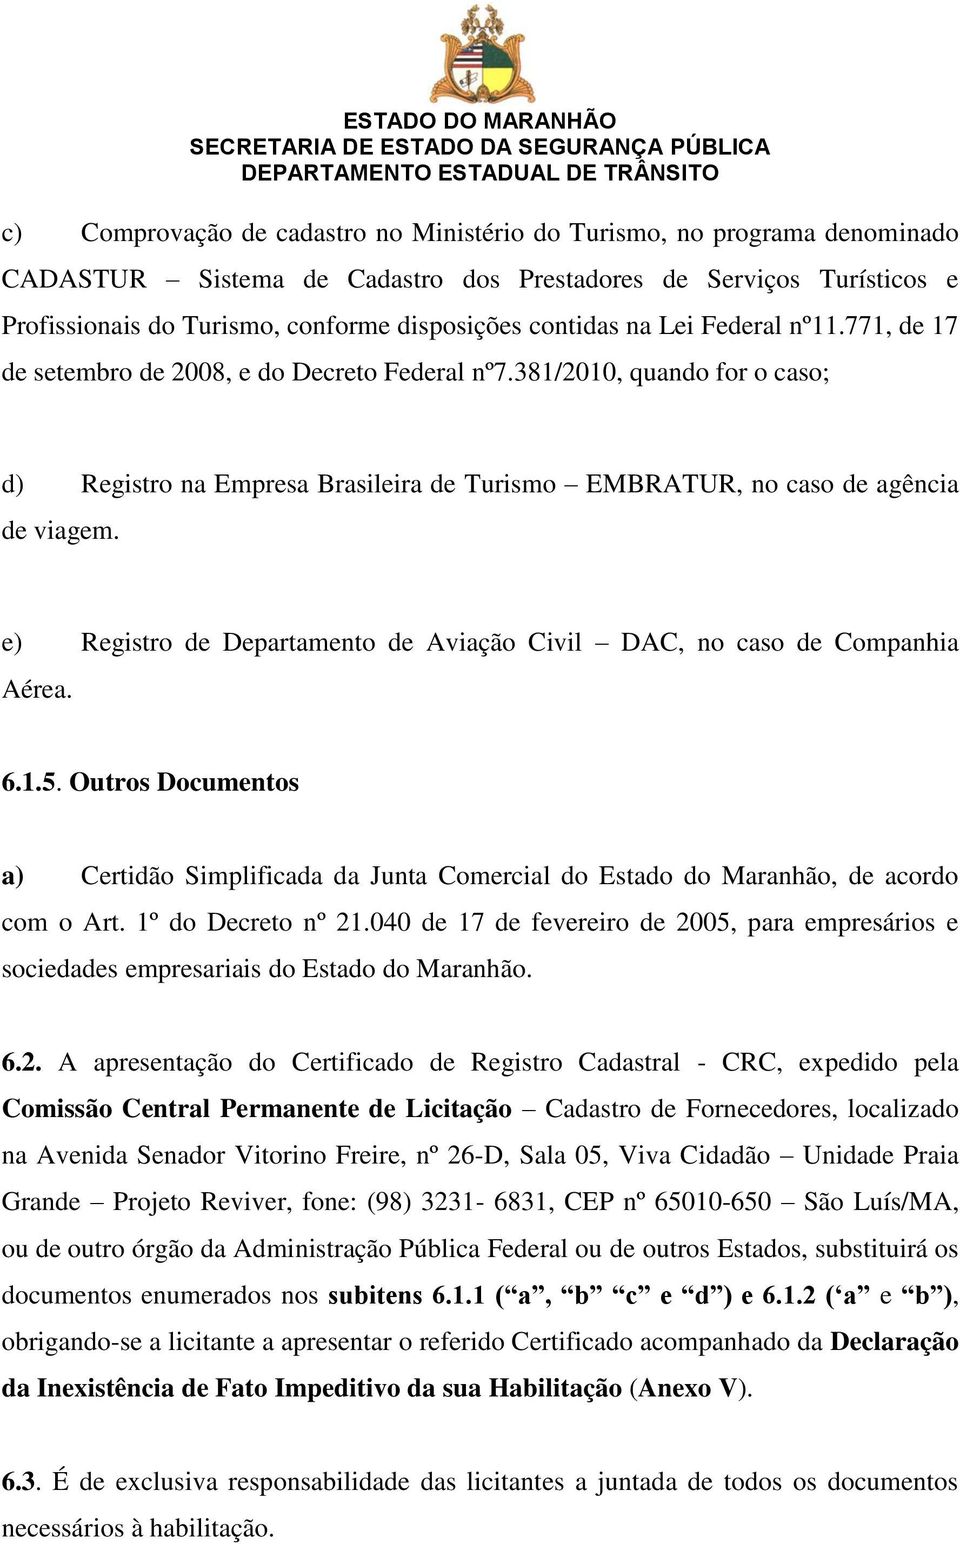 e) Registro de Departamento de Aviação Civil DAC, no caso de Companhia Aérea. 6.1.5. Outros Documentos a) Certidão Simplificada da Junta Comercial do Estado do Maranhão, de acordo com o Art.